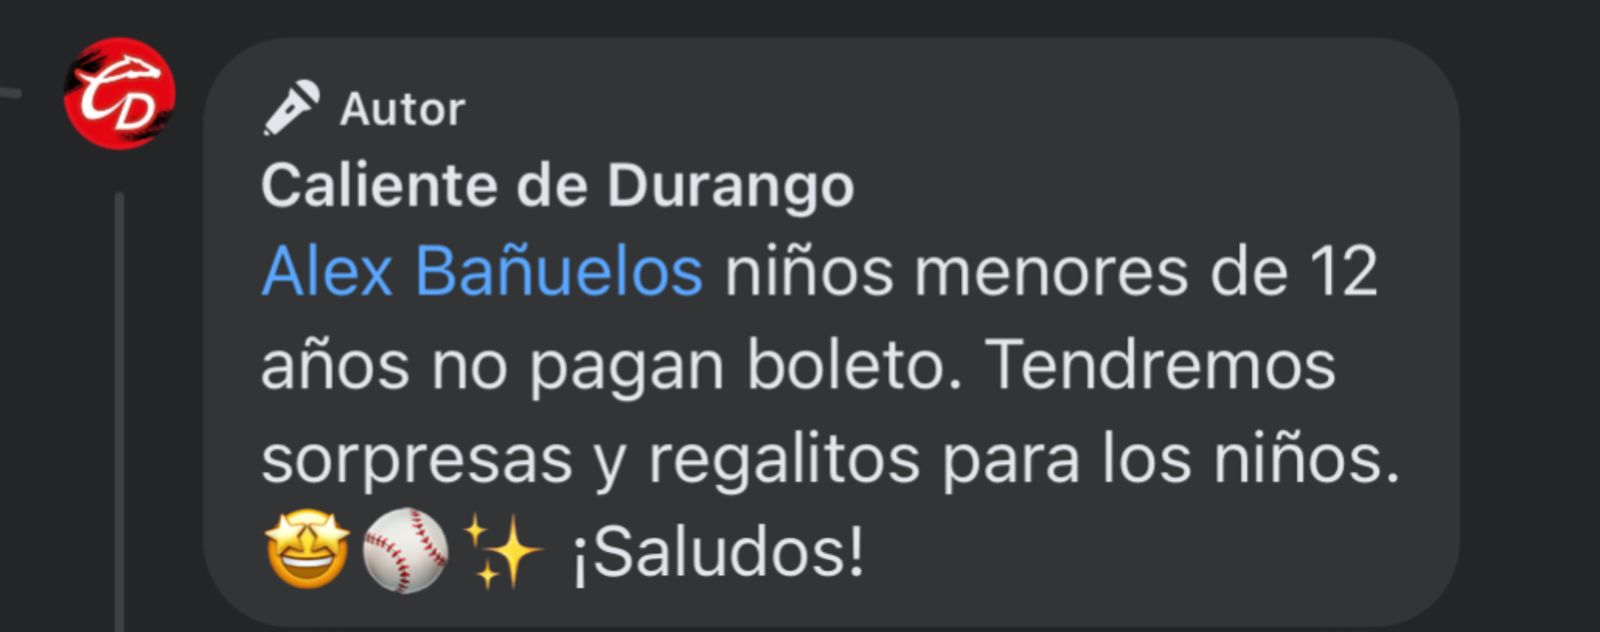 Caliente de Durango confirma promoción para los niños menores de 12 años. Foto: Captura de pantalla.